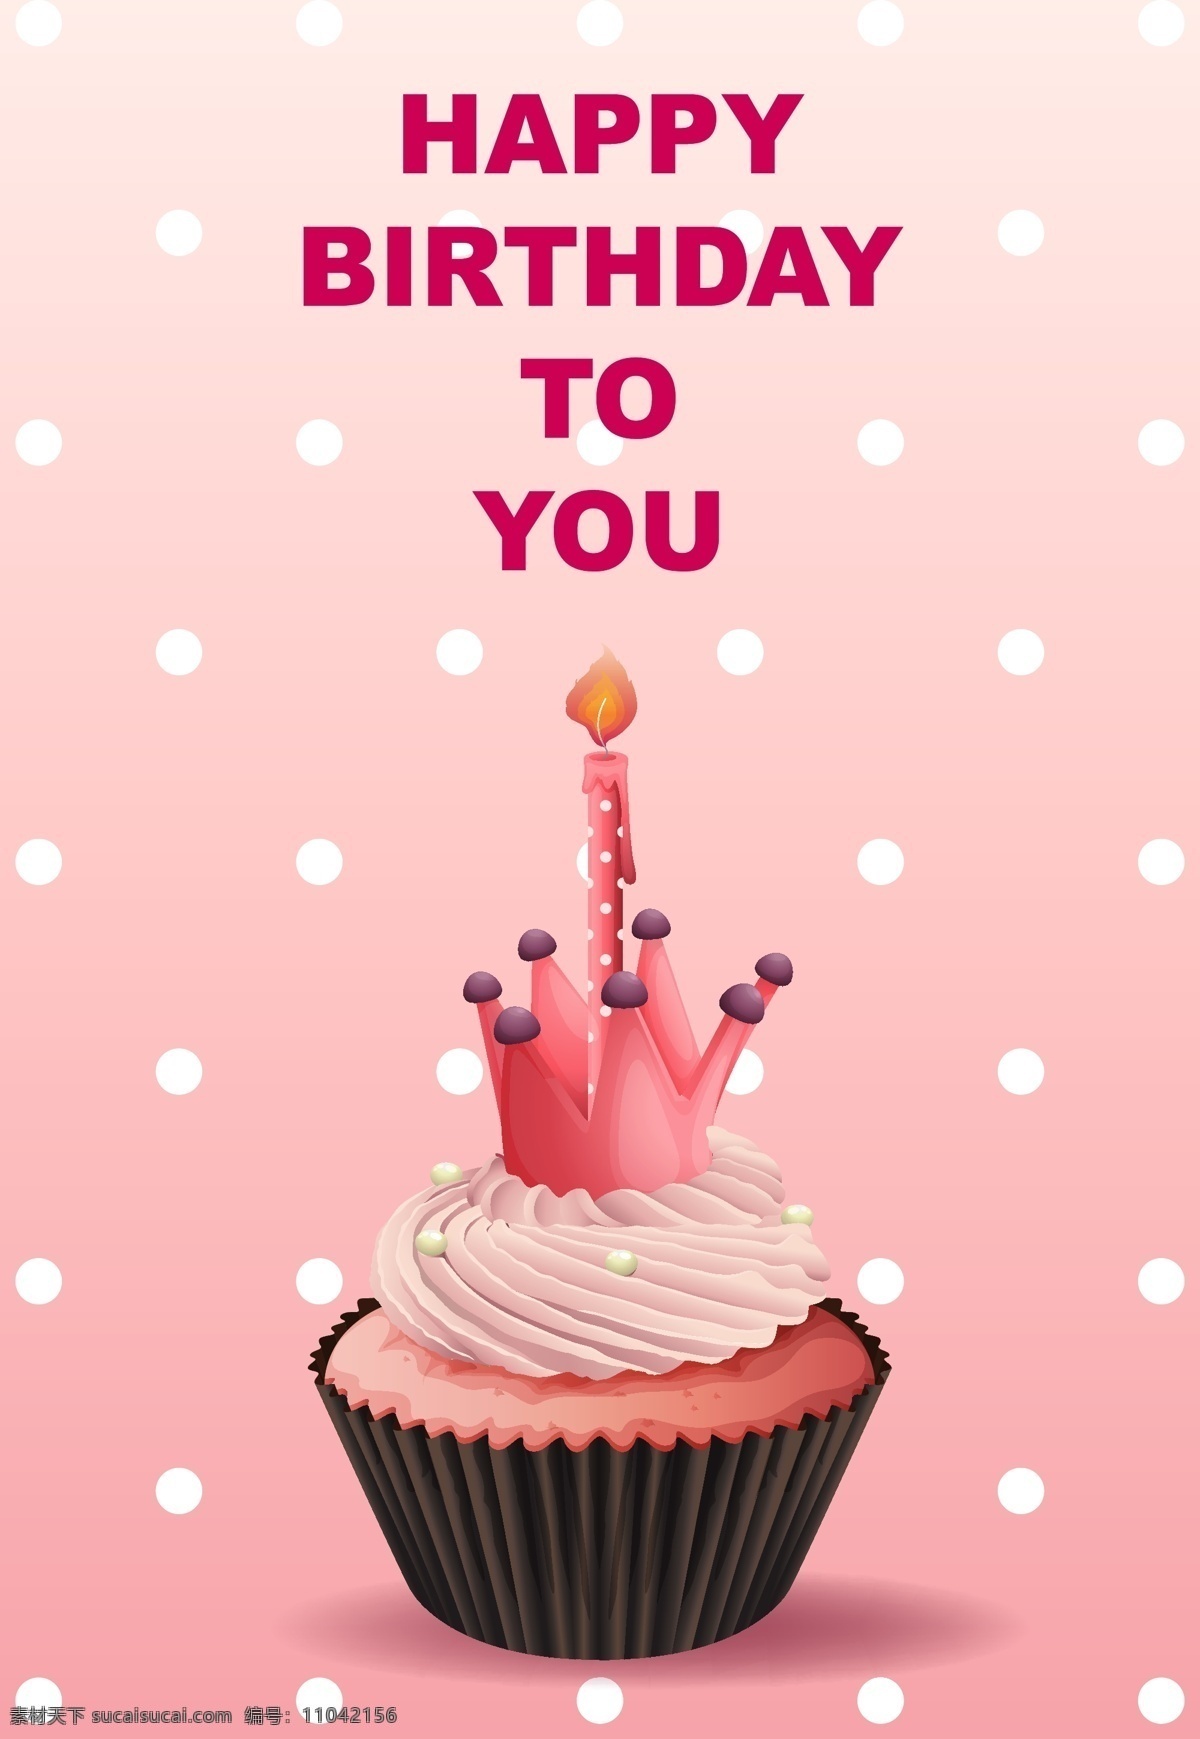 快乐 生日 卡片 模板 粉色 蛋糕 背景 横幅 海报 生日快乐 党 卡 纸 光 粉红色 横幅背景 艺术 庆典 图形 生日卡 装饰